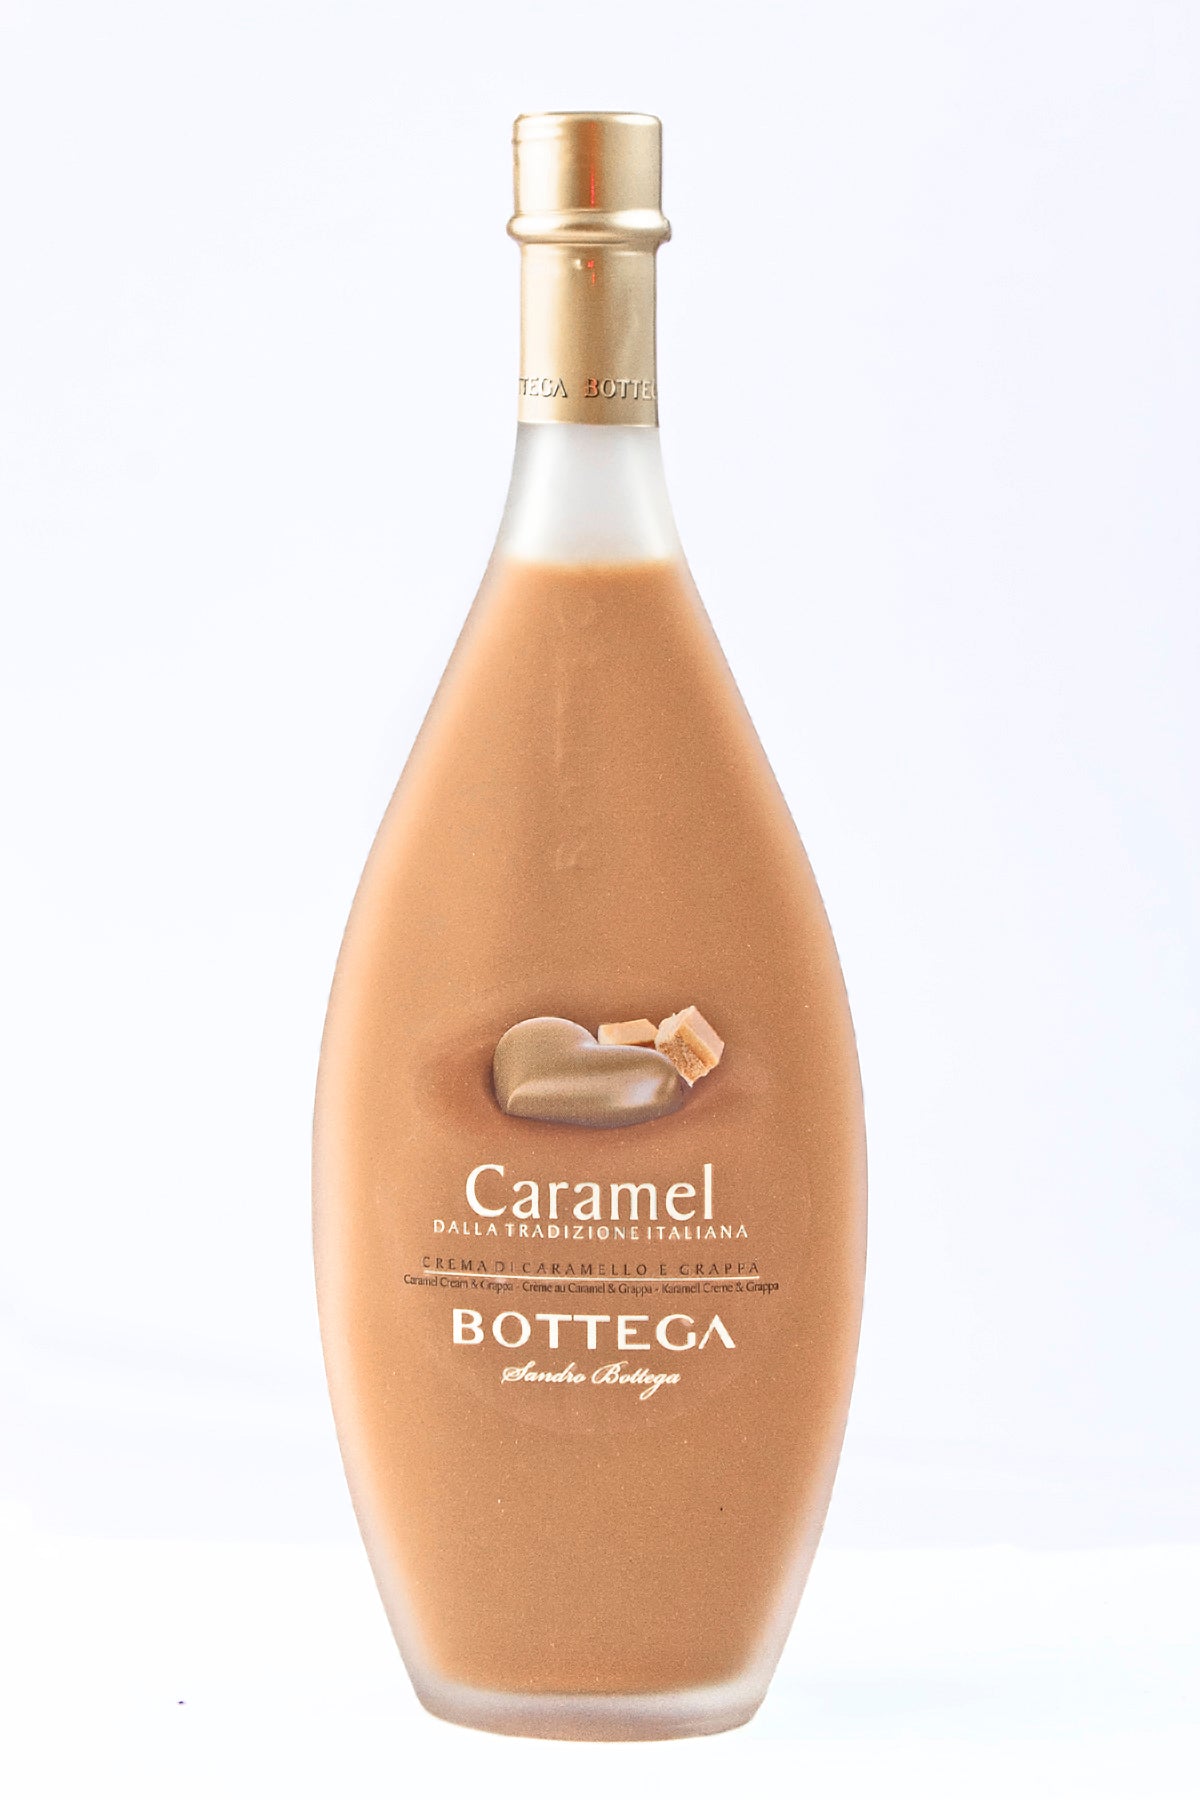 Bottega - Caramel Cream Liquore